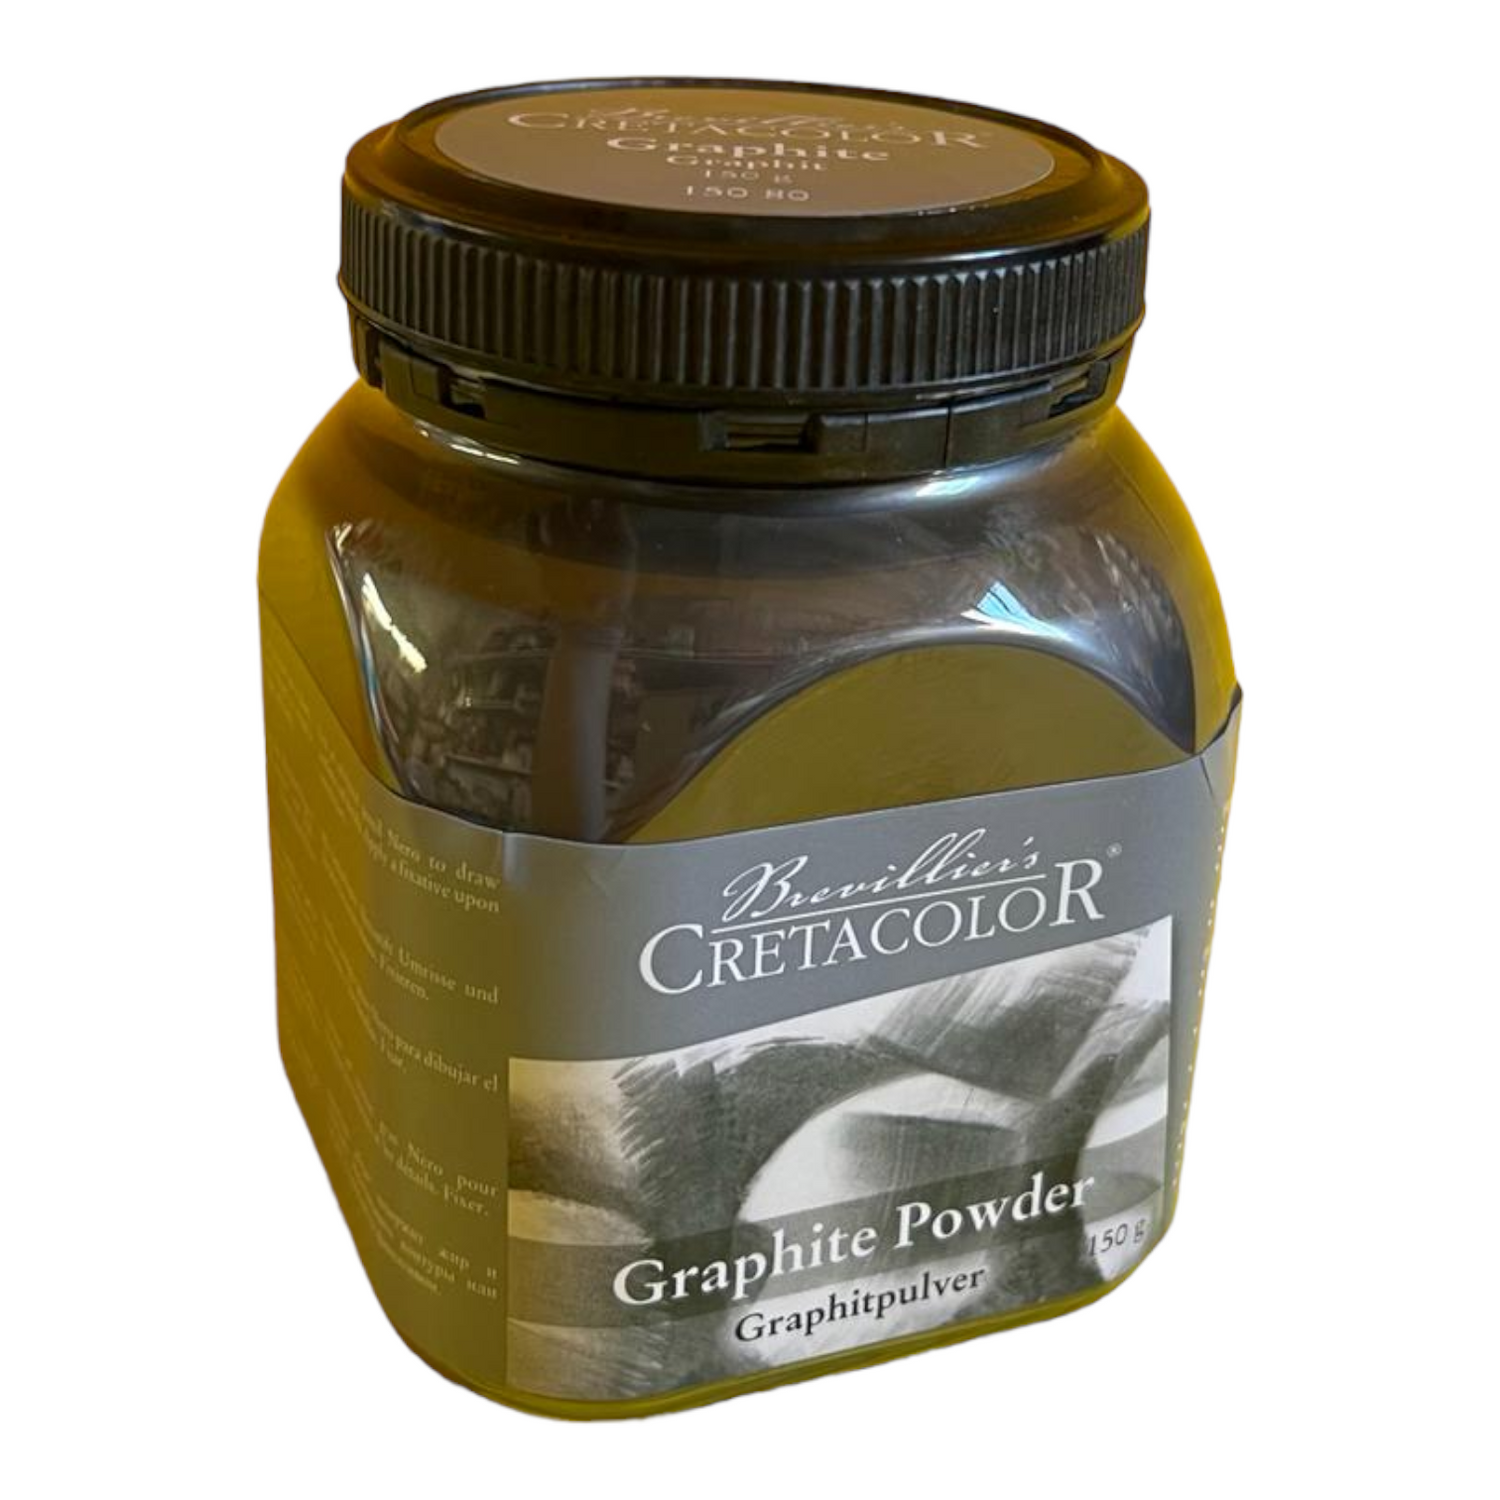 Cretacolor Graphite Powder, 150 G